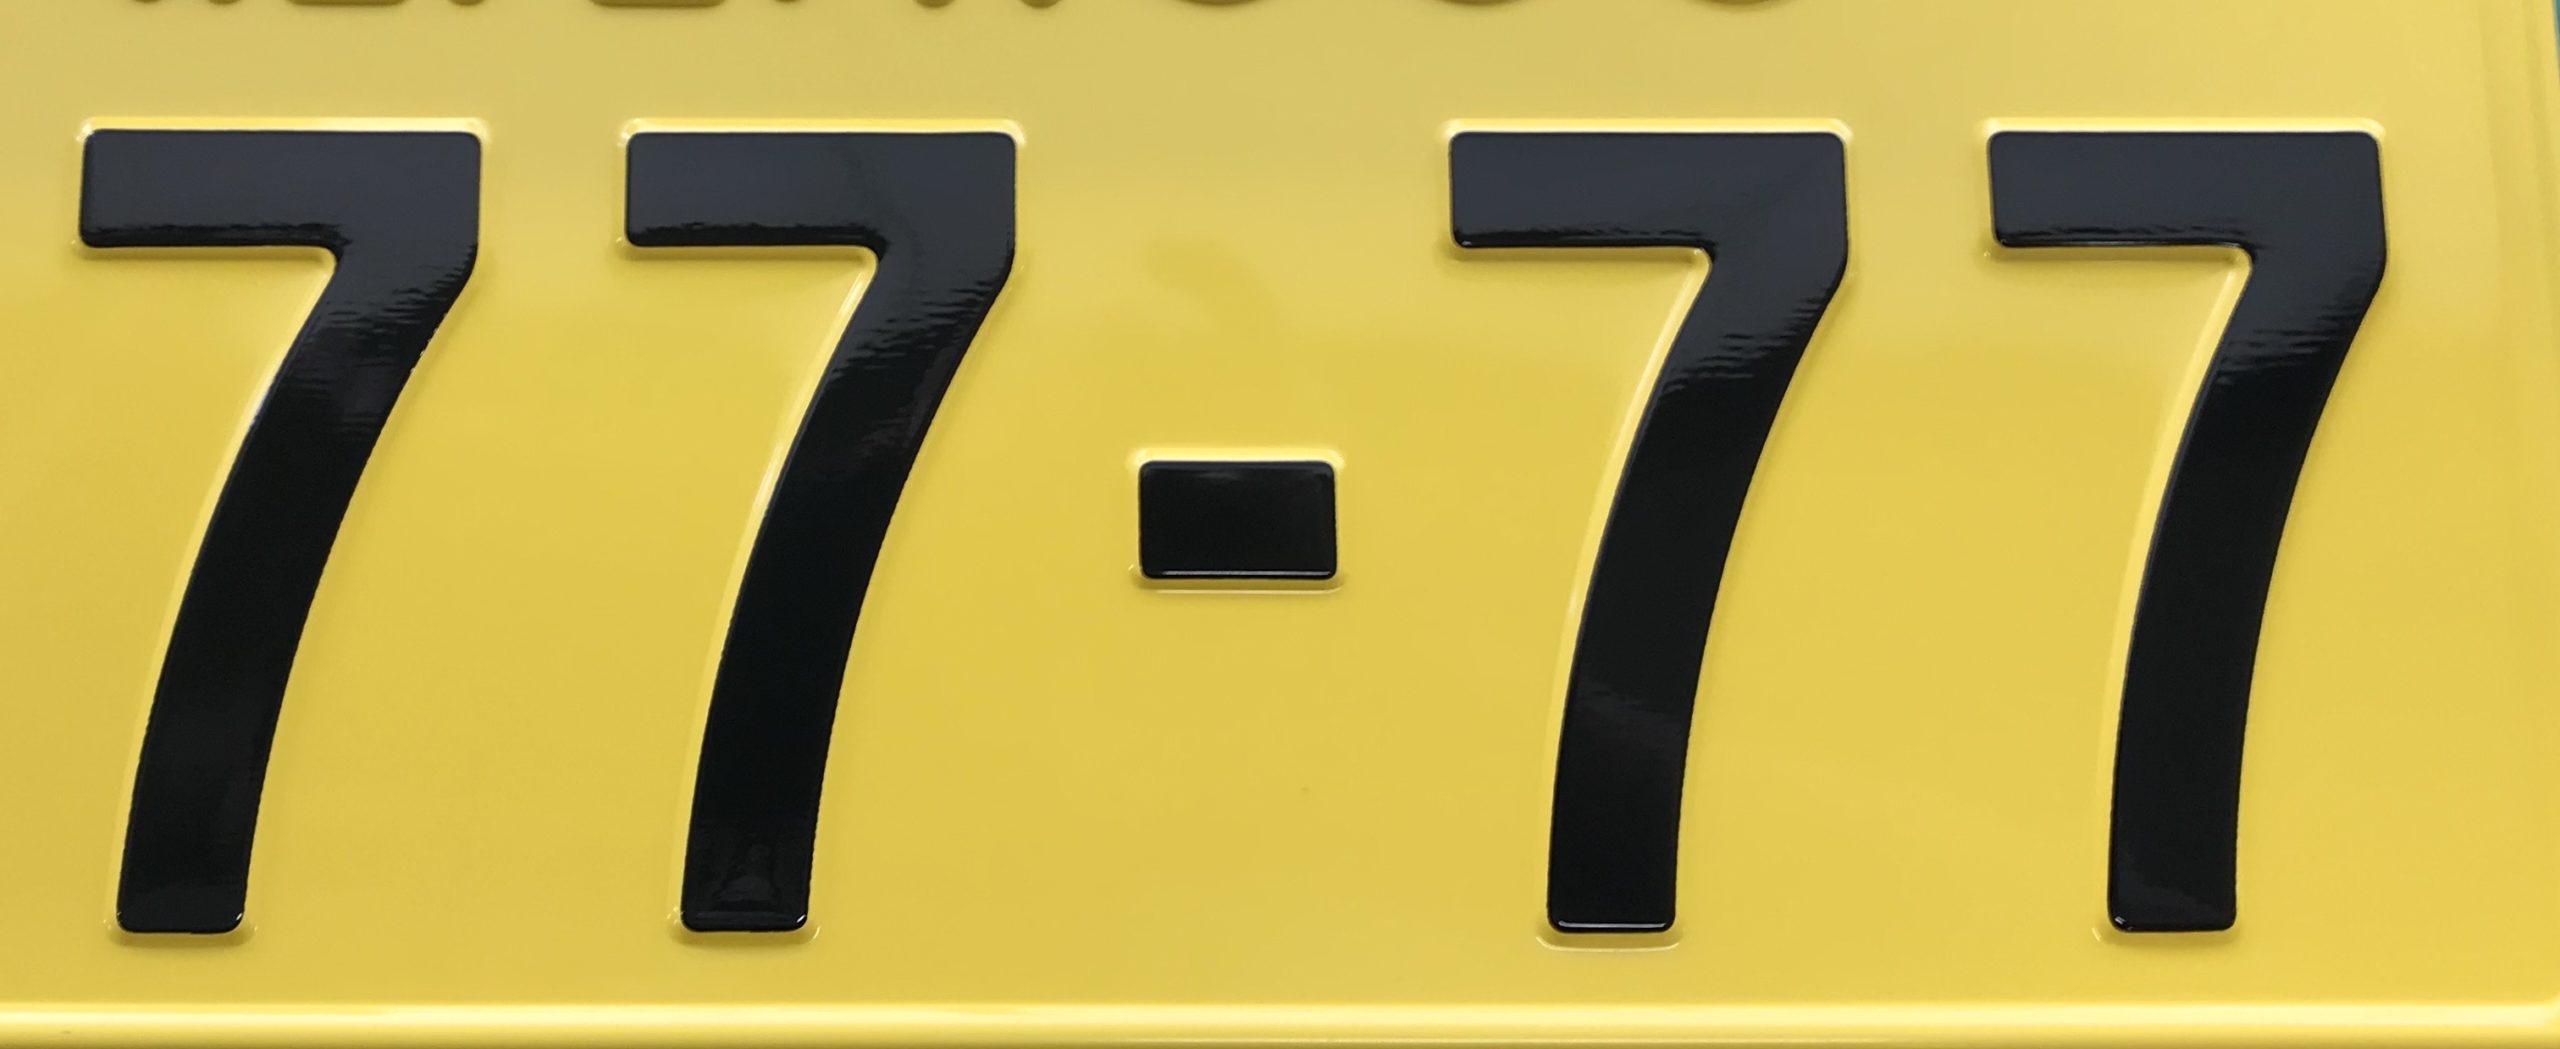 希望ナンバー 7777 を取得 特殊ナンバーなら意外と当たる 自動車 バイクの手続き代行 新規登録 名義変更 即日対応